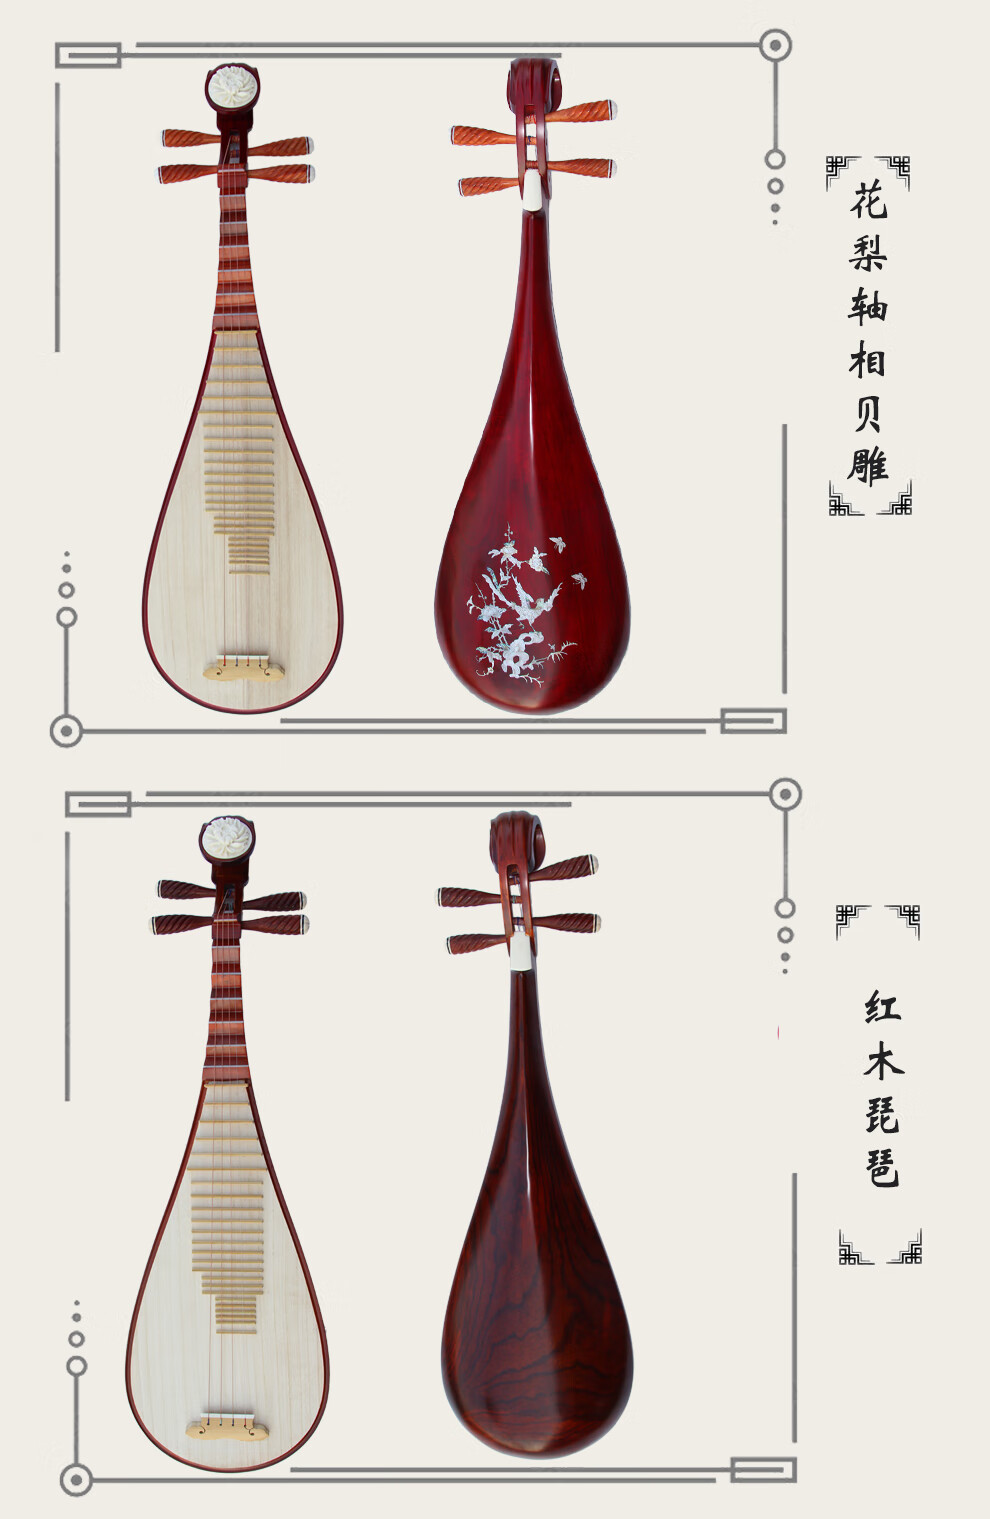 琵琶的乐器构造图片